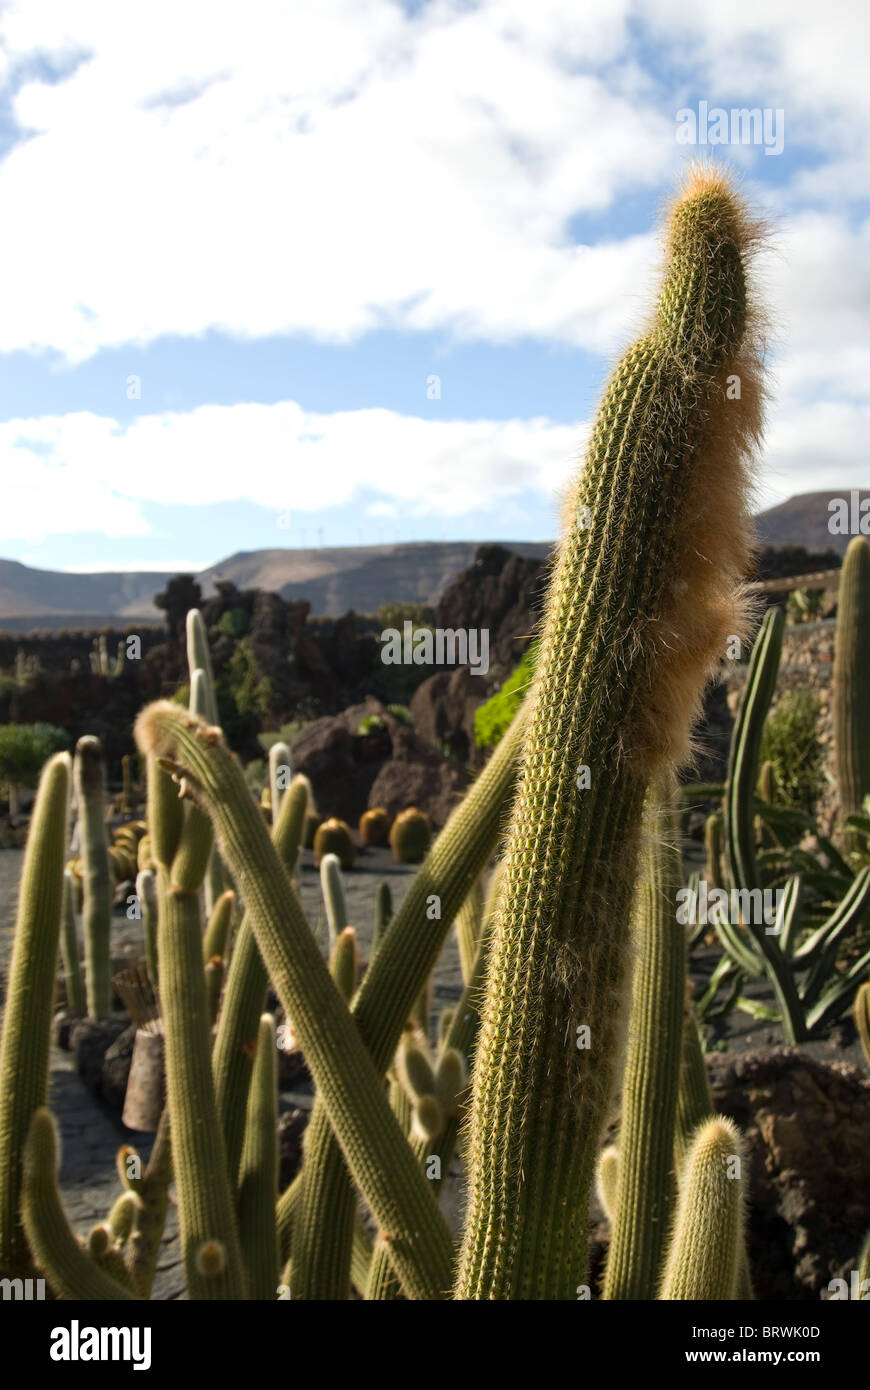 Jardin de Cactus,Cactus Garden in Guatiza, Lanzarote Canary Islands, Spain Stock Photo